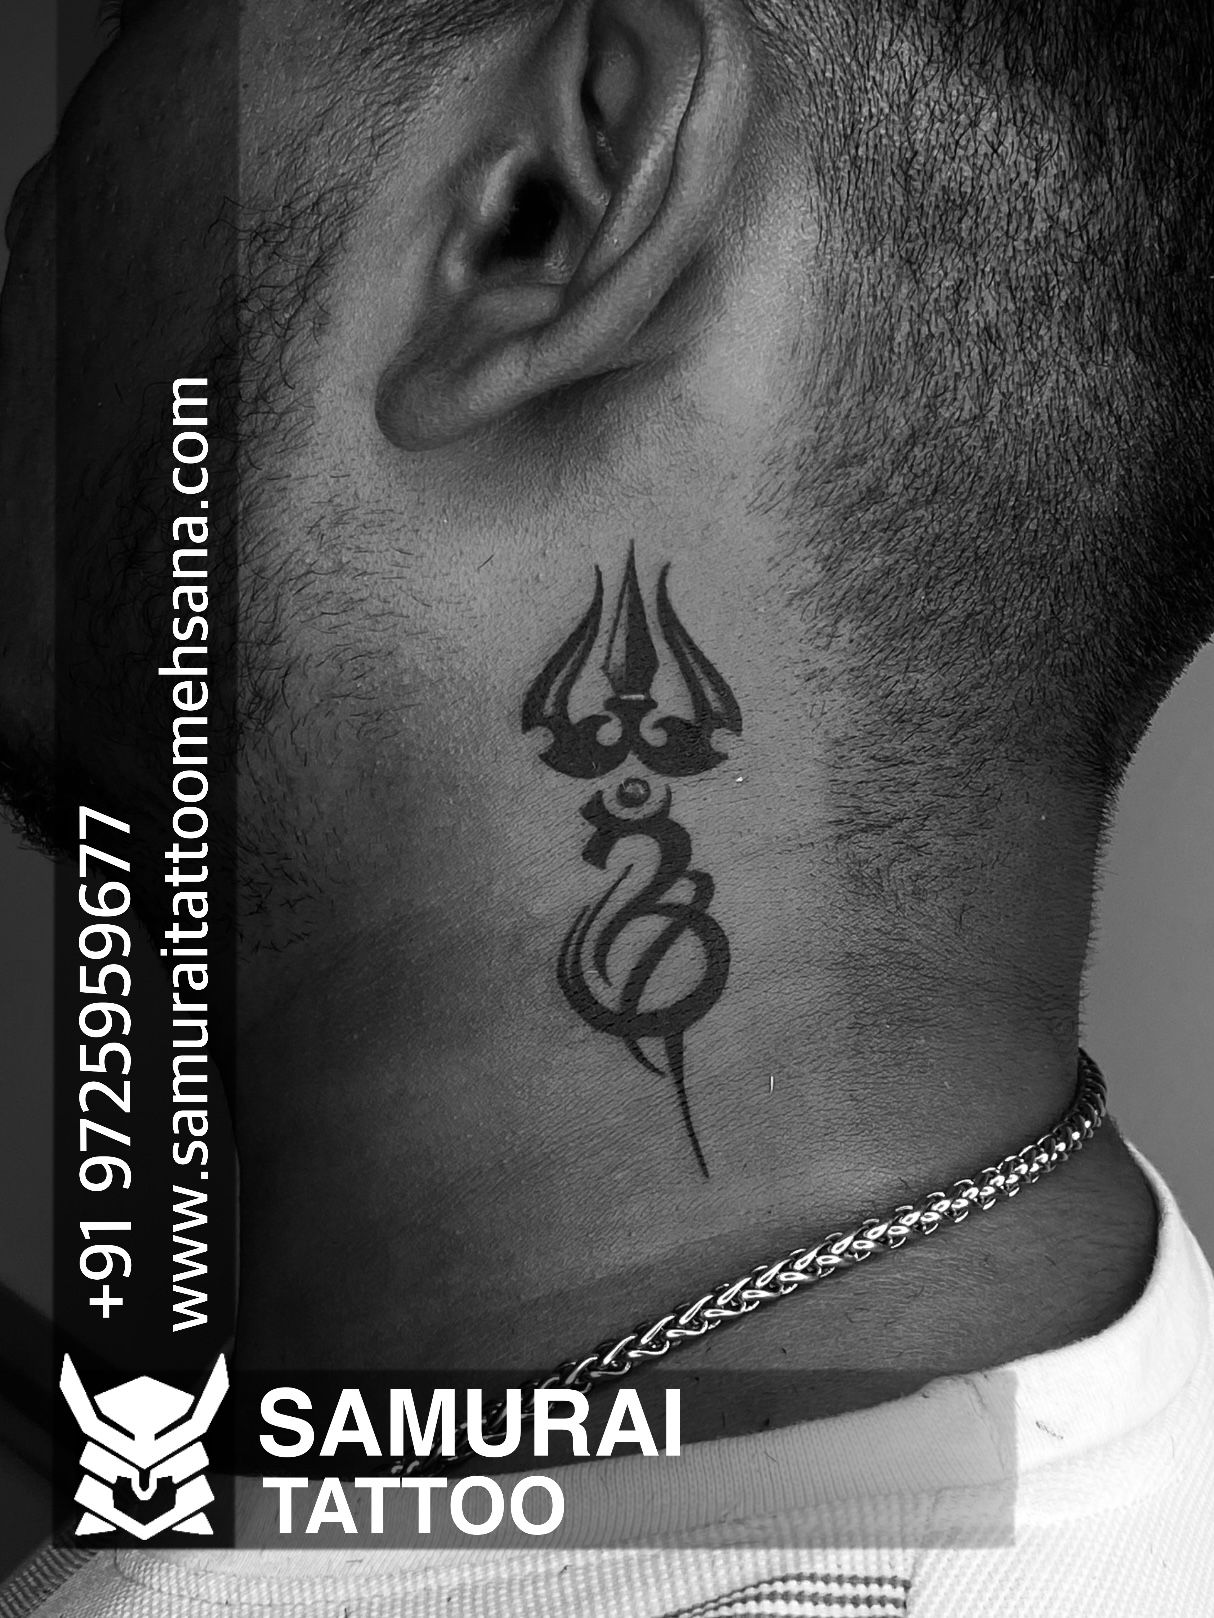 Shiva Tattoo | Shiva tattoo, Hindu tattoos, Shiva tattoo design